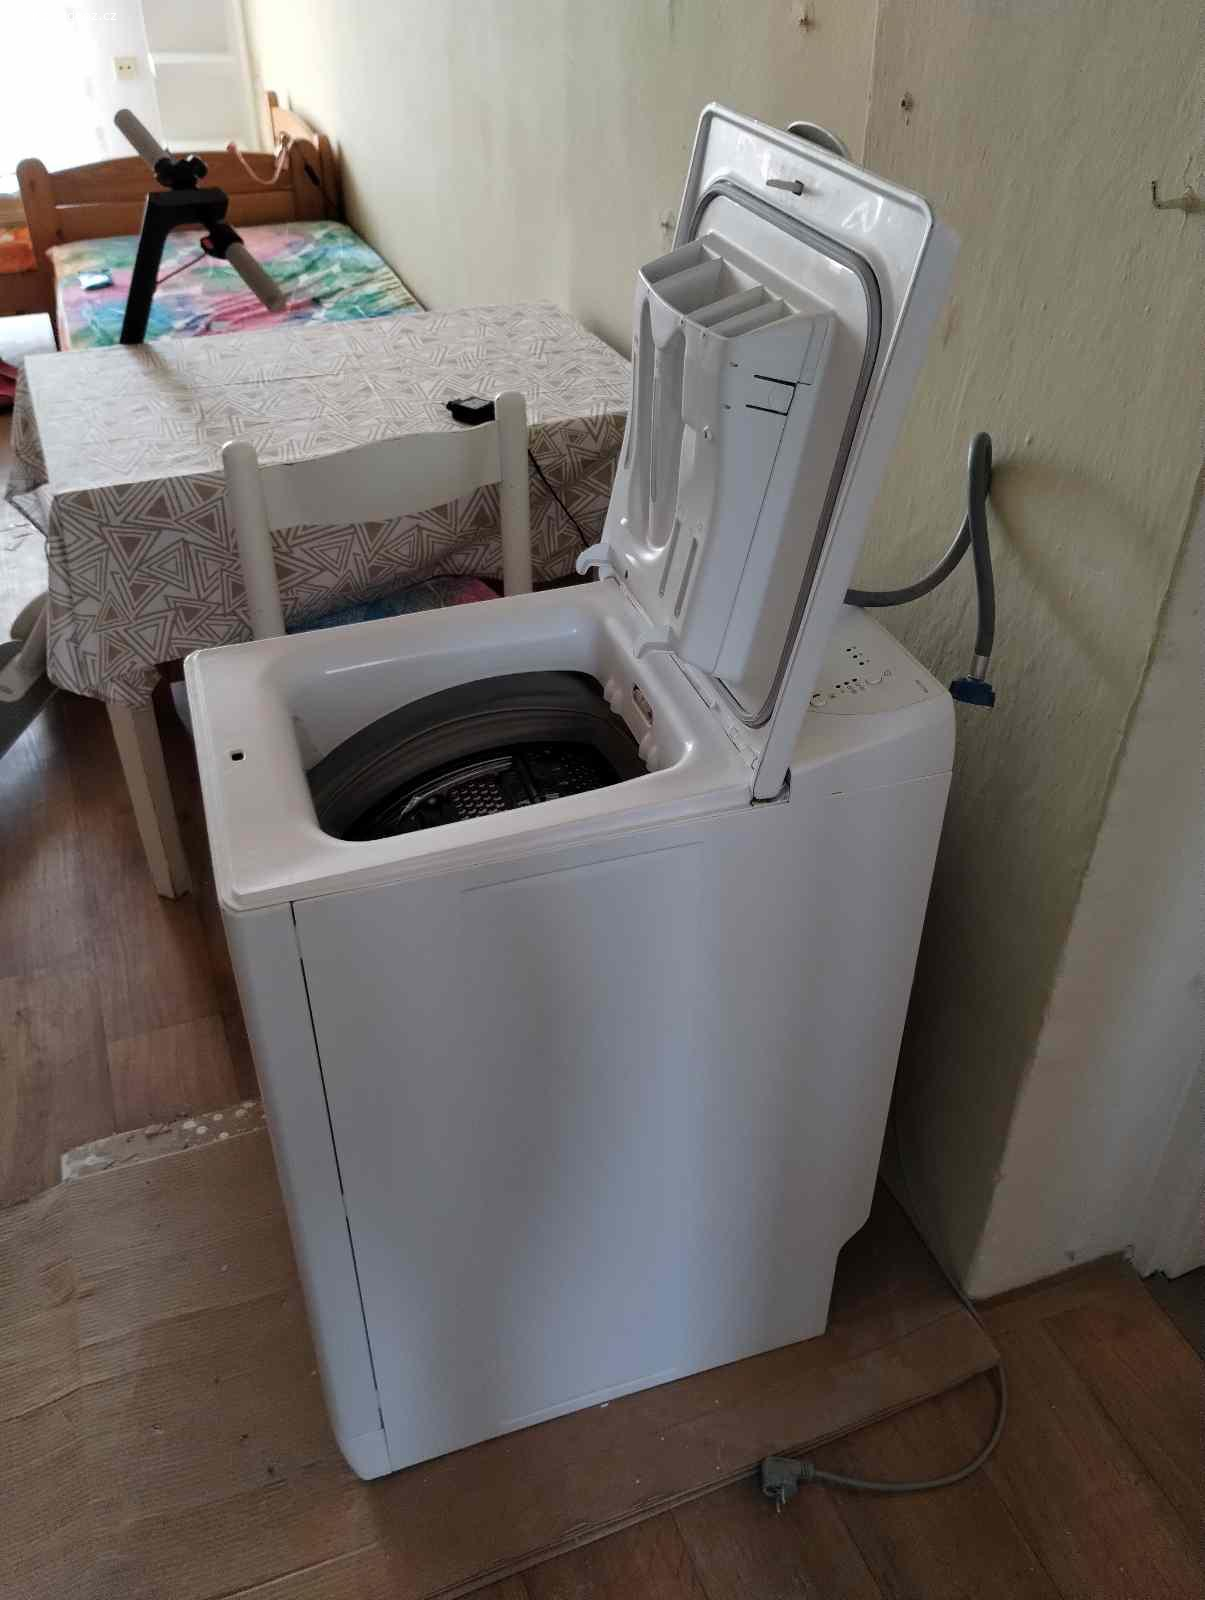 Daruji pračku. Pračka s horním plněním, funkční, ale má zrezlé víko